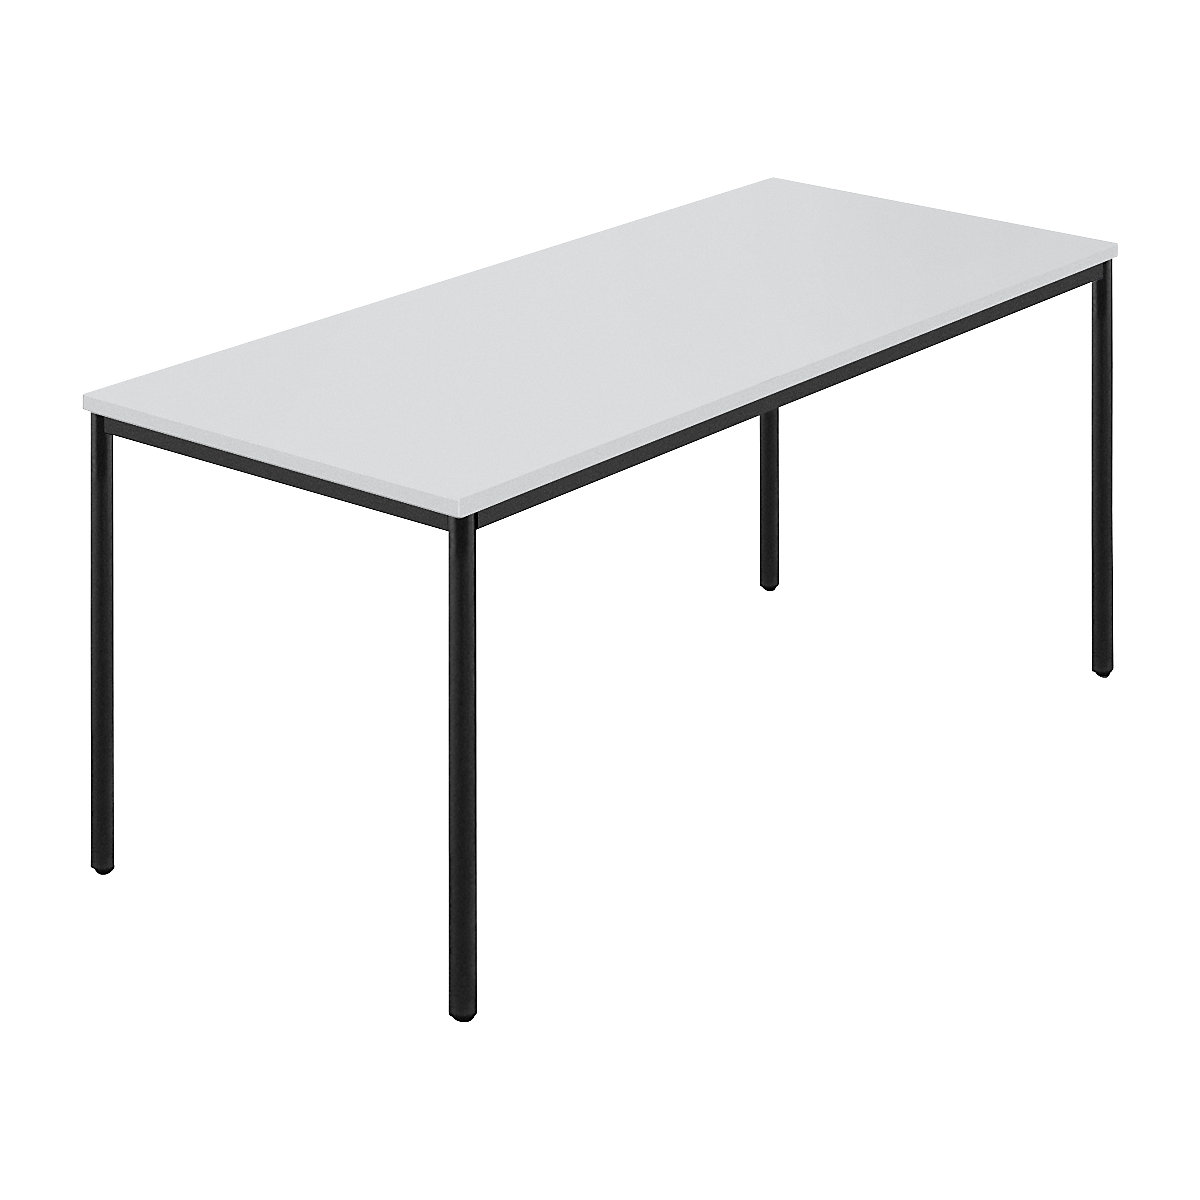 Rechthoekige tafel, ronde buis met coating, b x d = 1600 x 800 mm, grijs / antracietkleurig-6